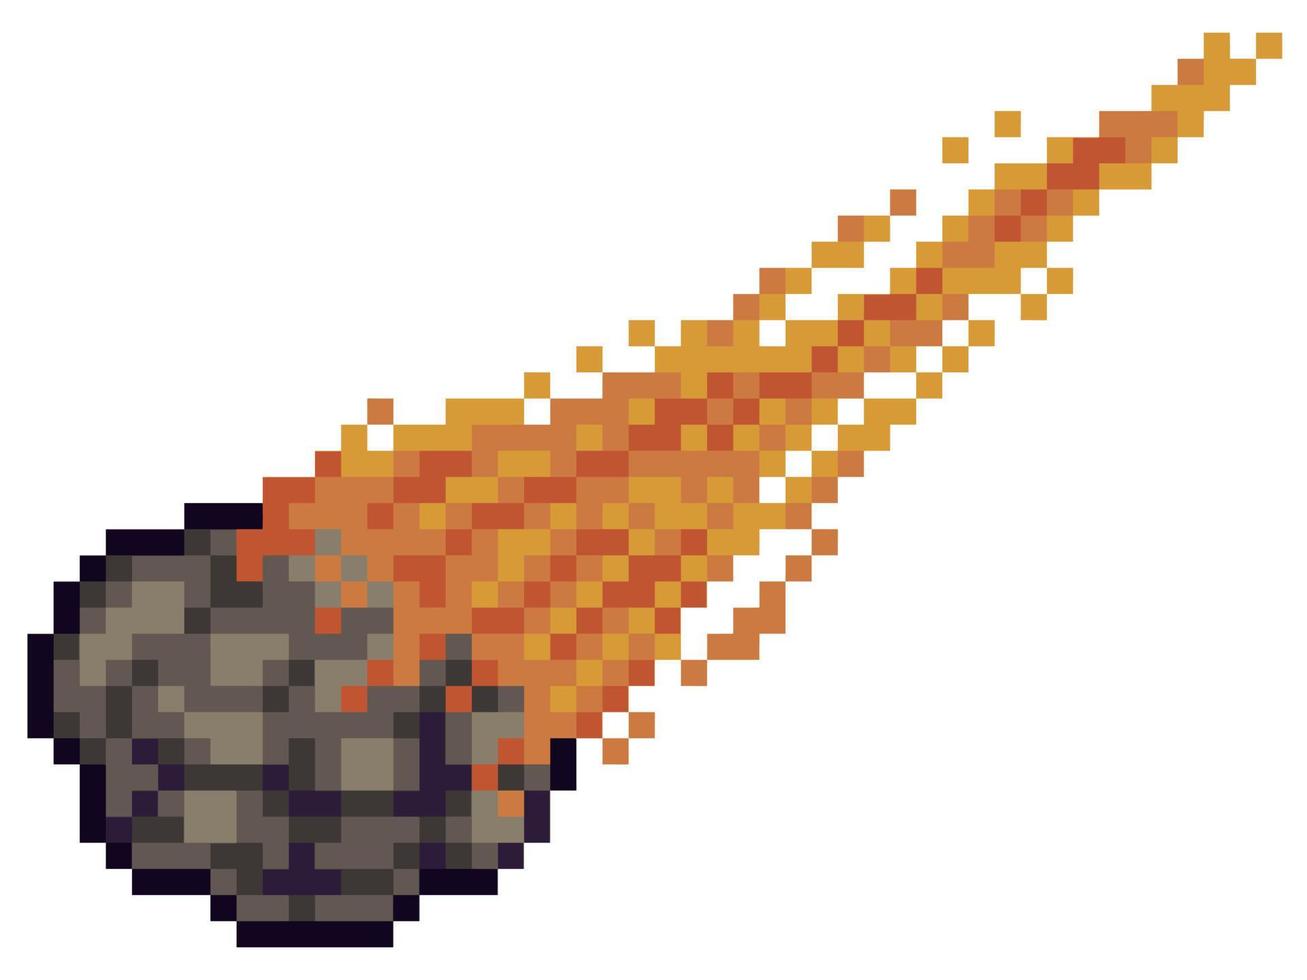 pixel art meteora, asteroide, cometa oggetto di gioco a 8 bit su sfondo bianco vettore